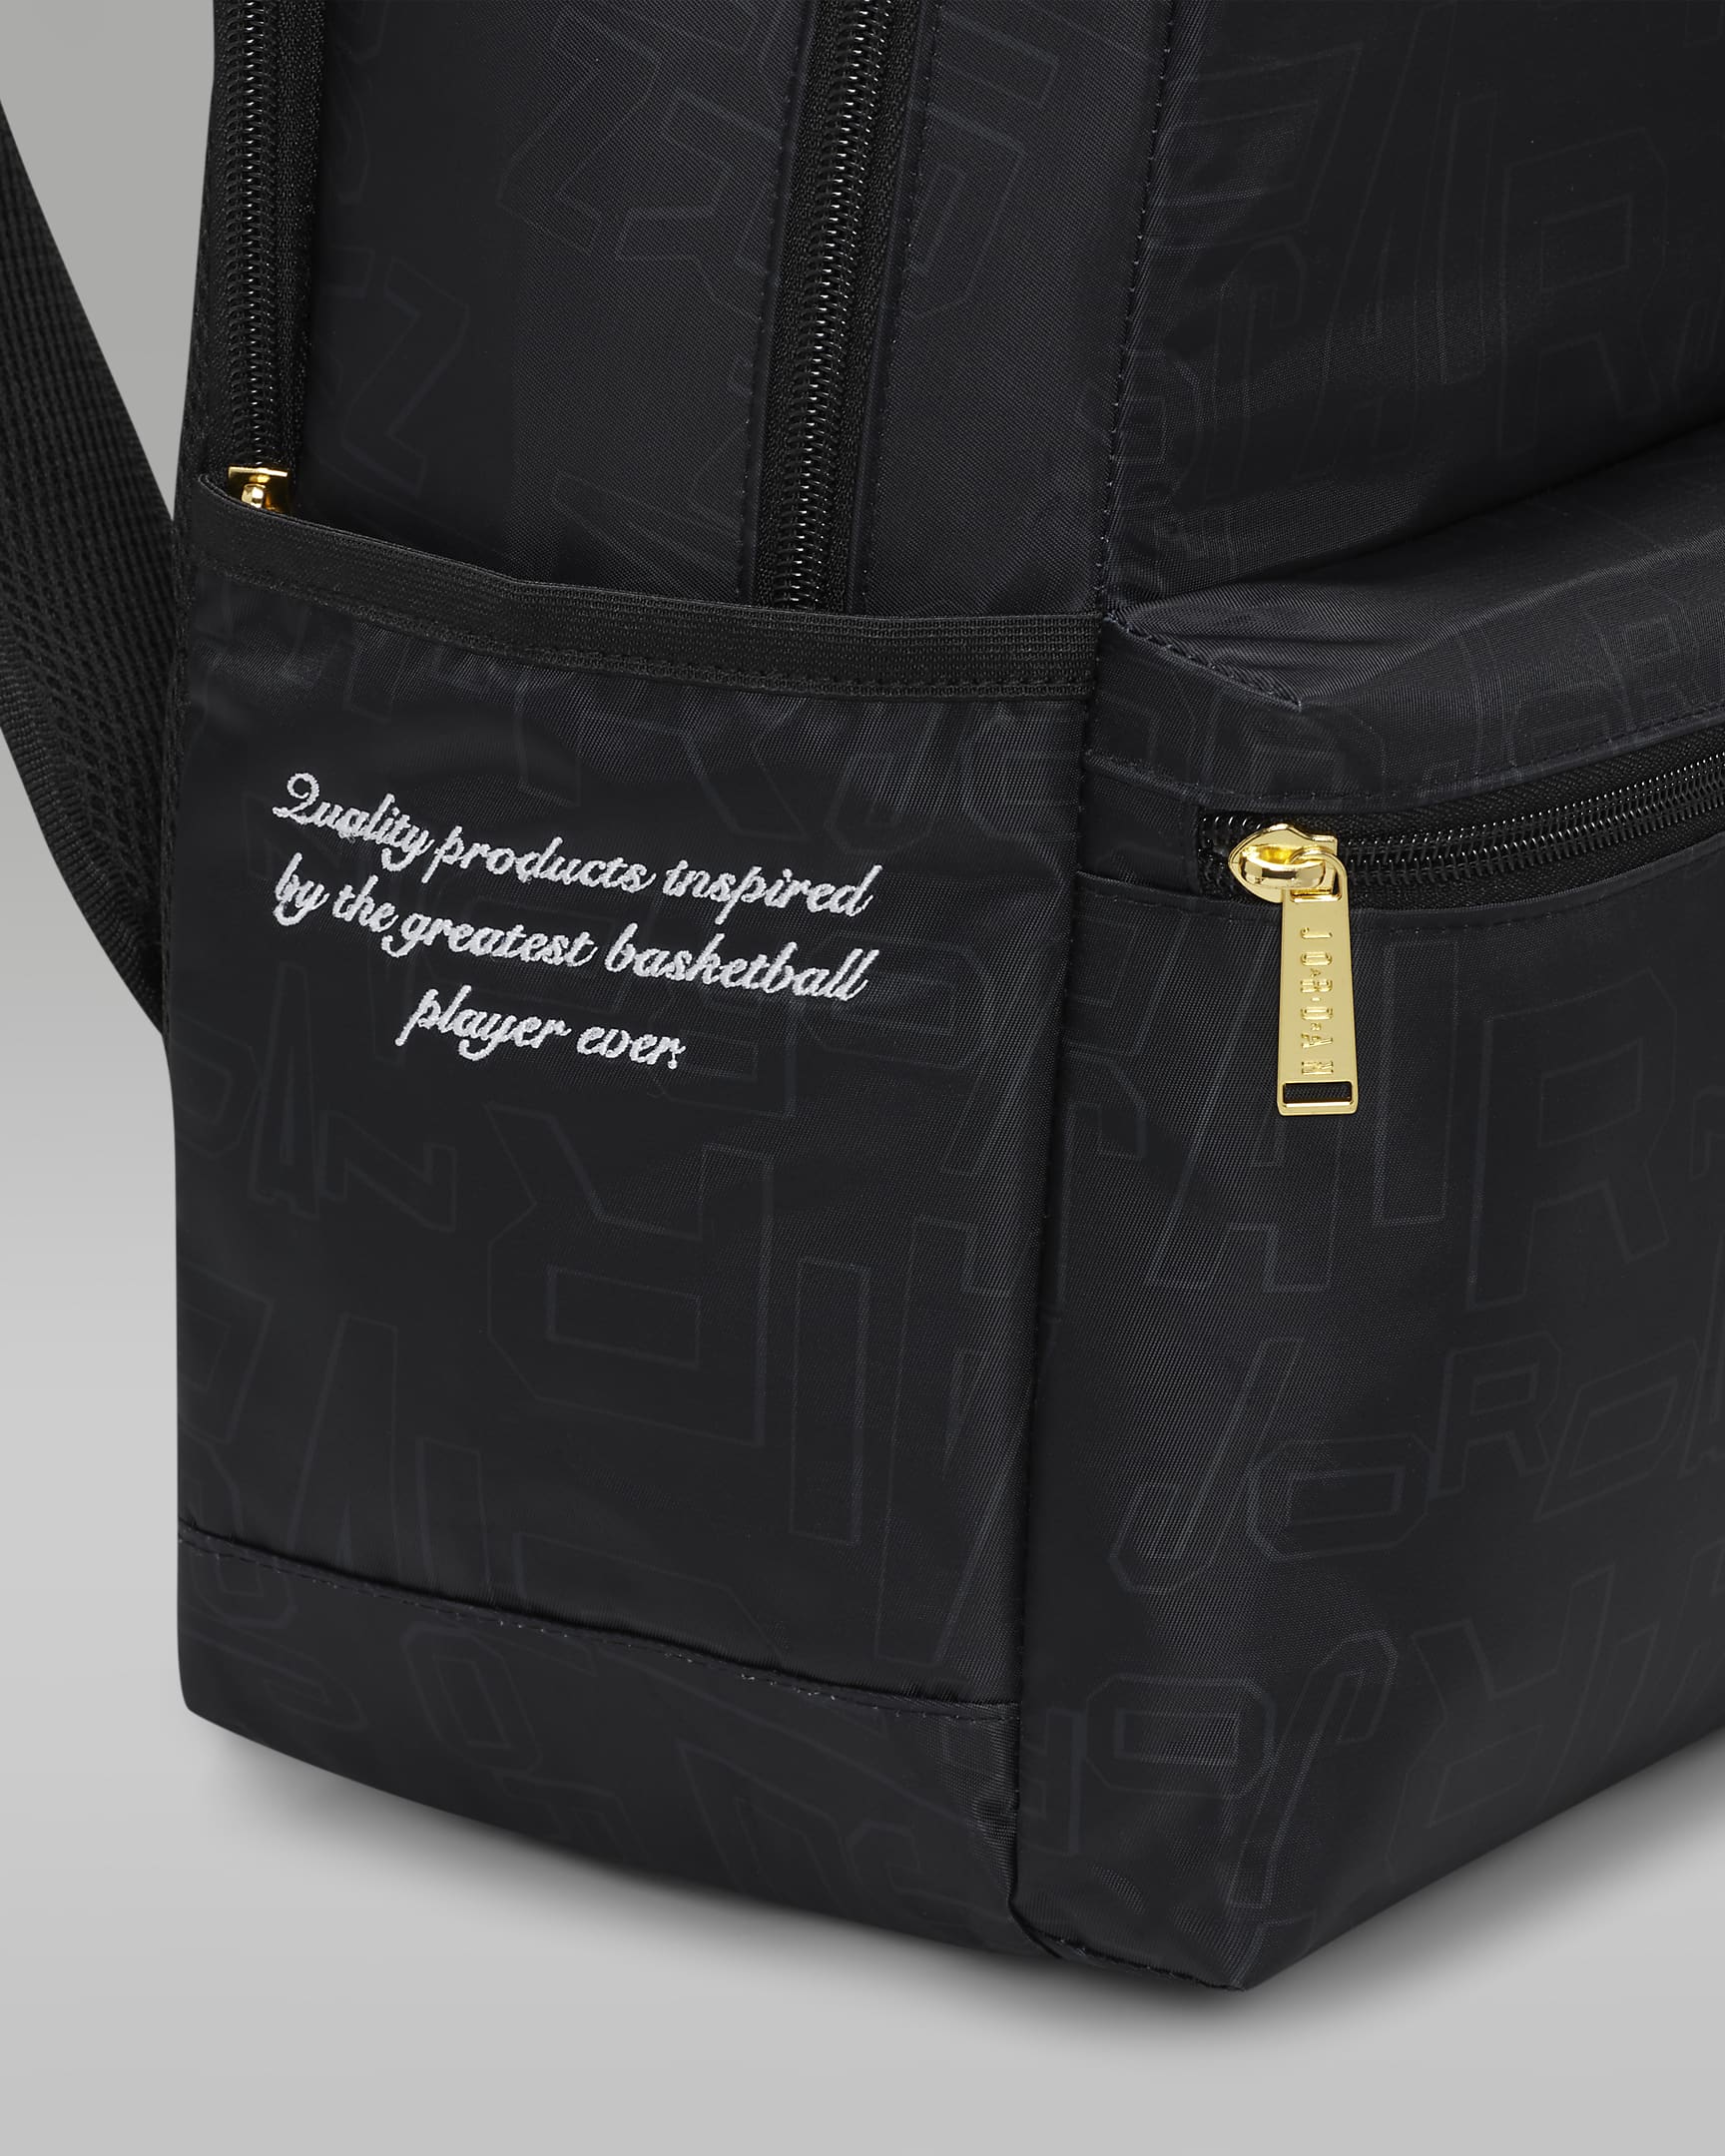 Jordan Black and Gold Backpack Backpack (19L). Nike UK